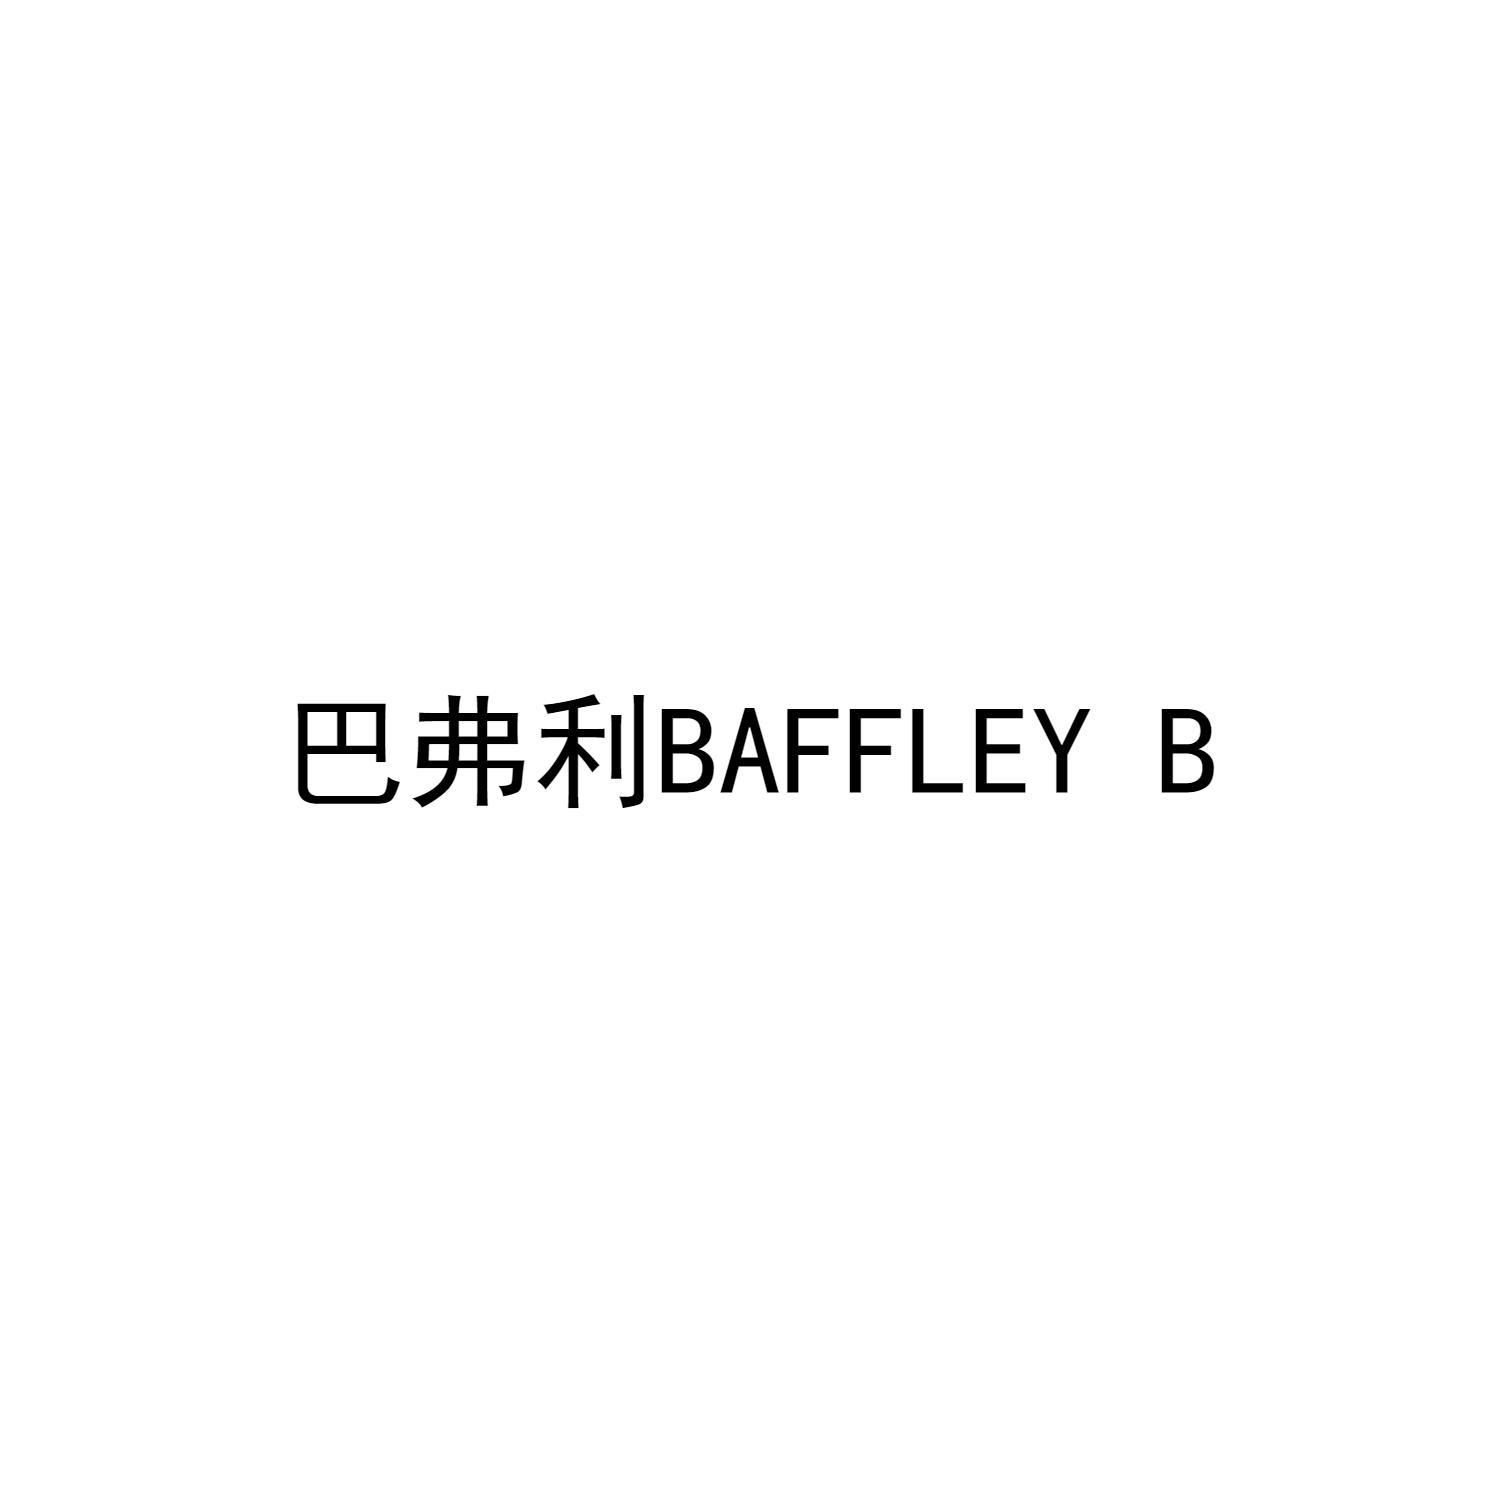 巴弗利 BAFFLEY B